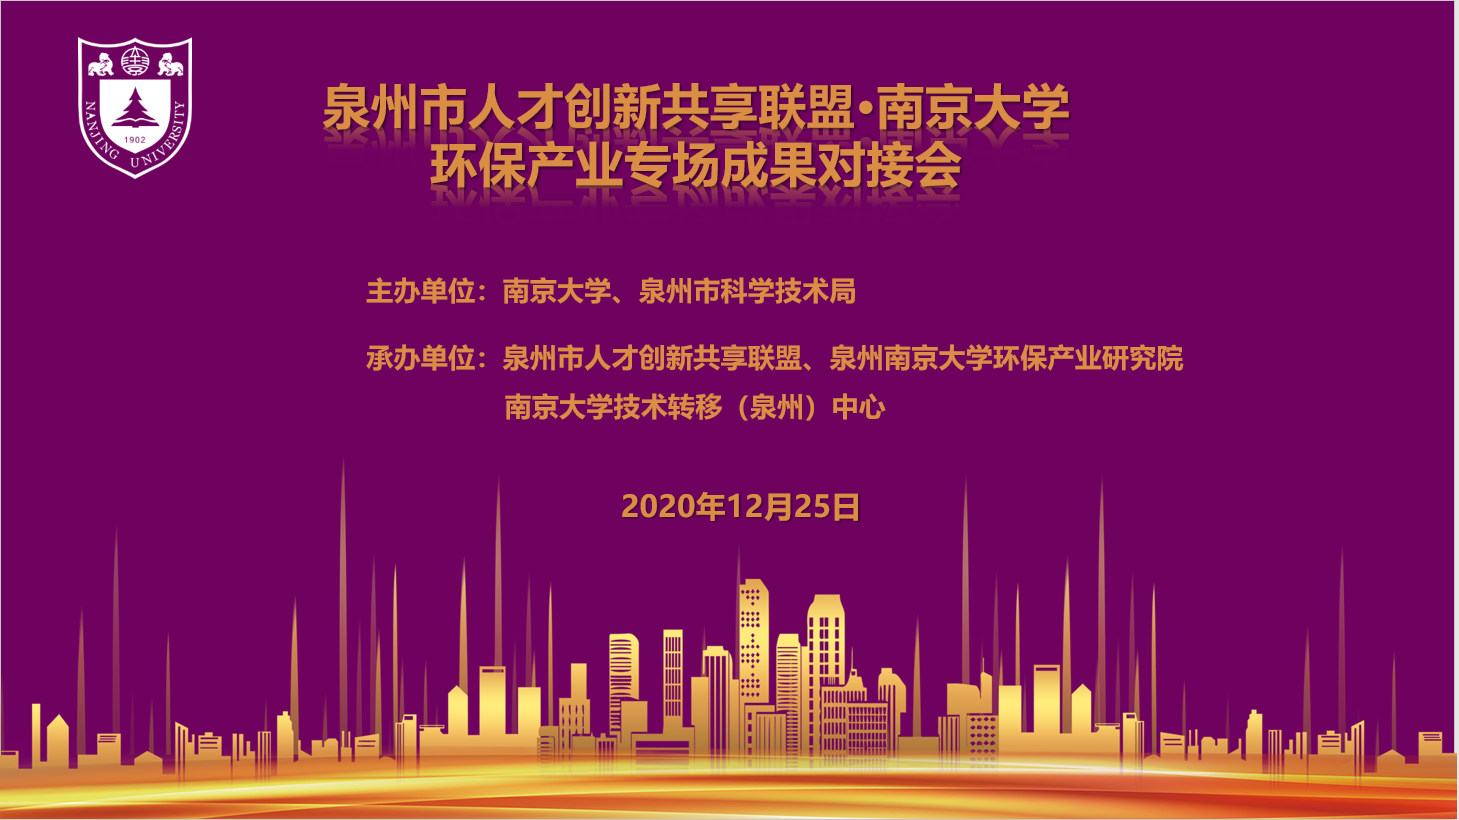 泉州市人才创新共享联盟·南京大学 环保产业专场成果对接会成功举办